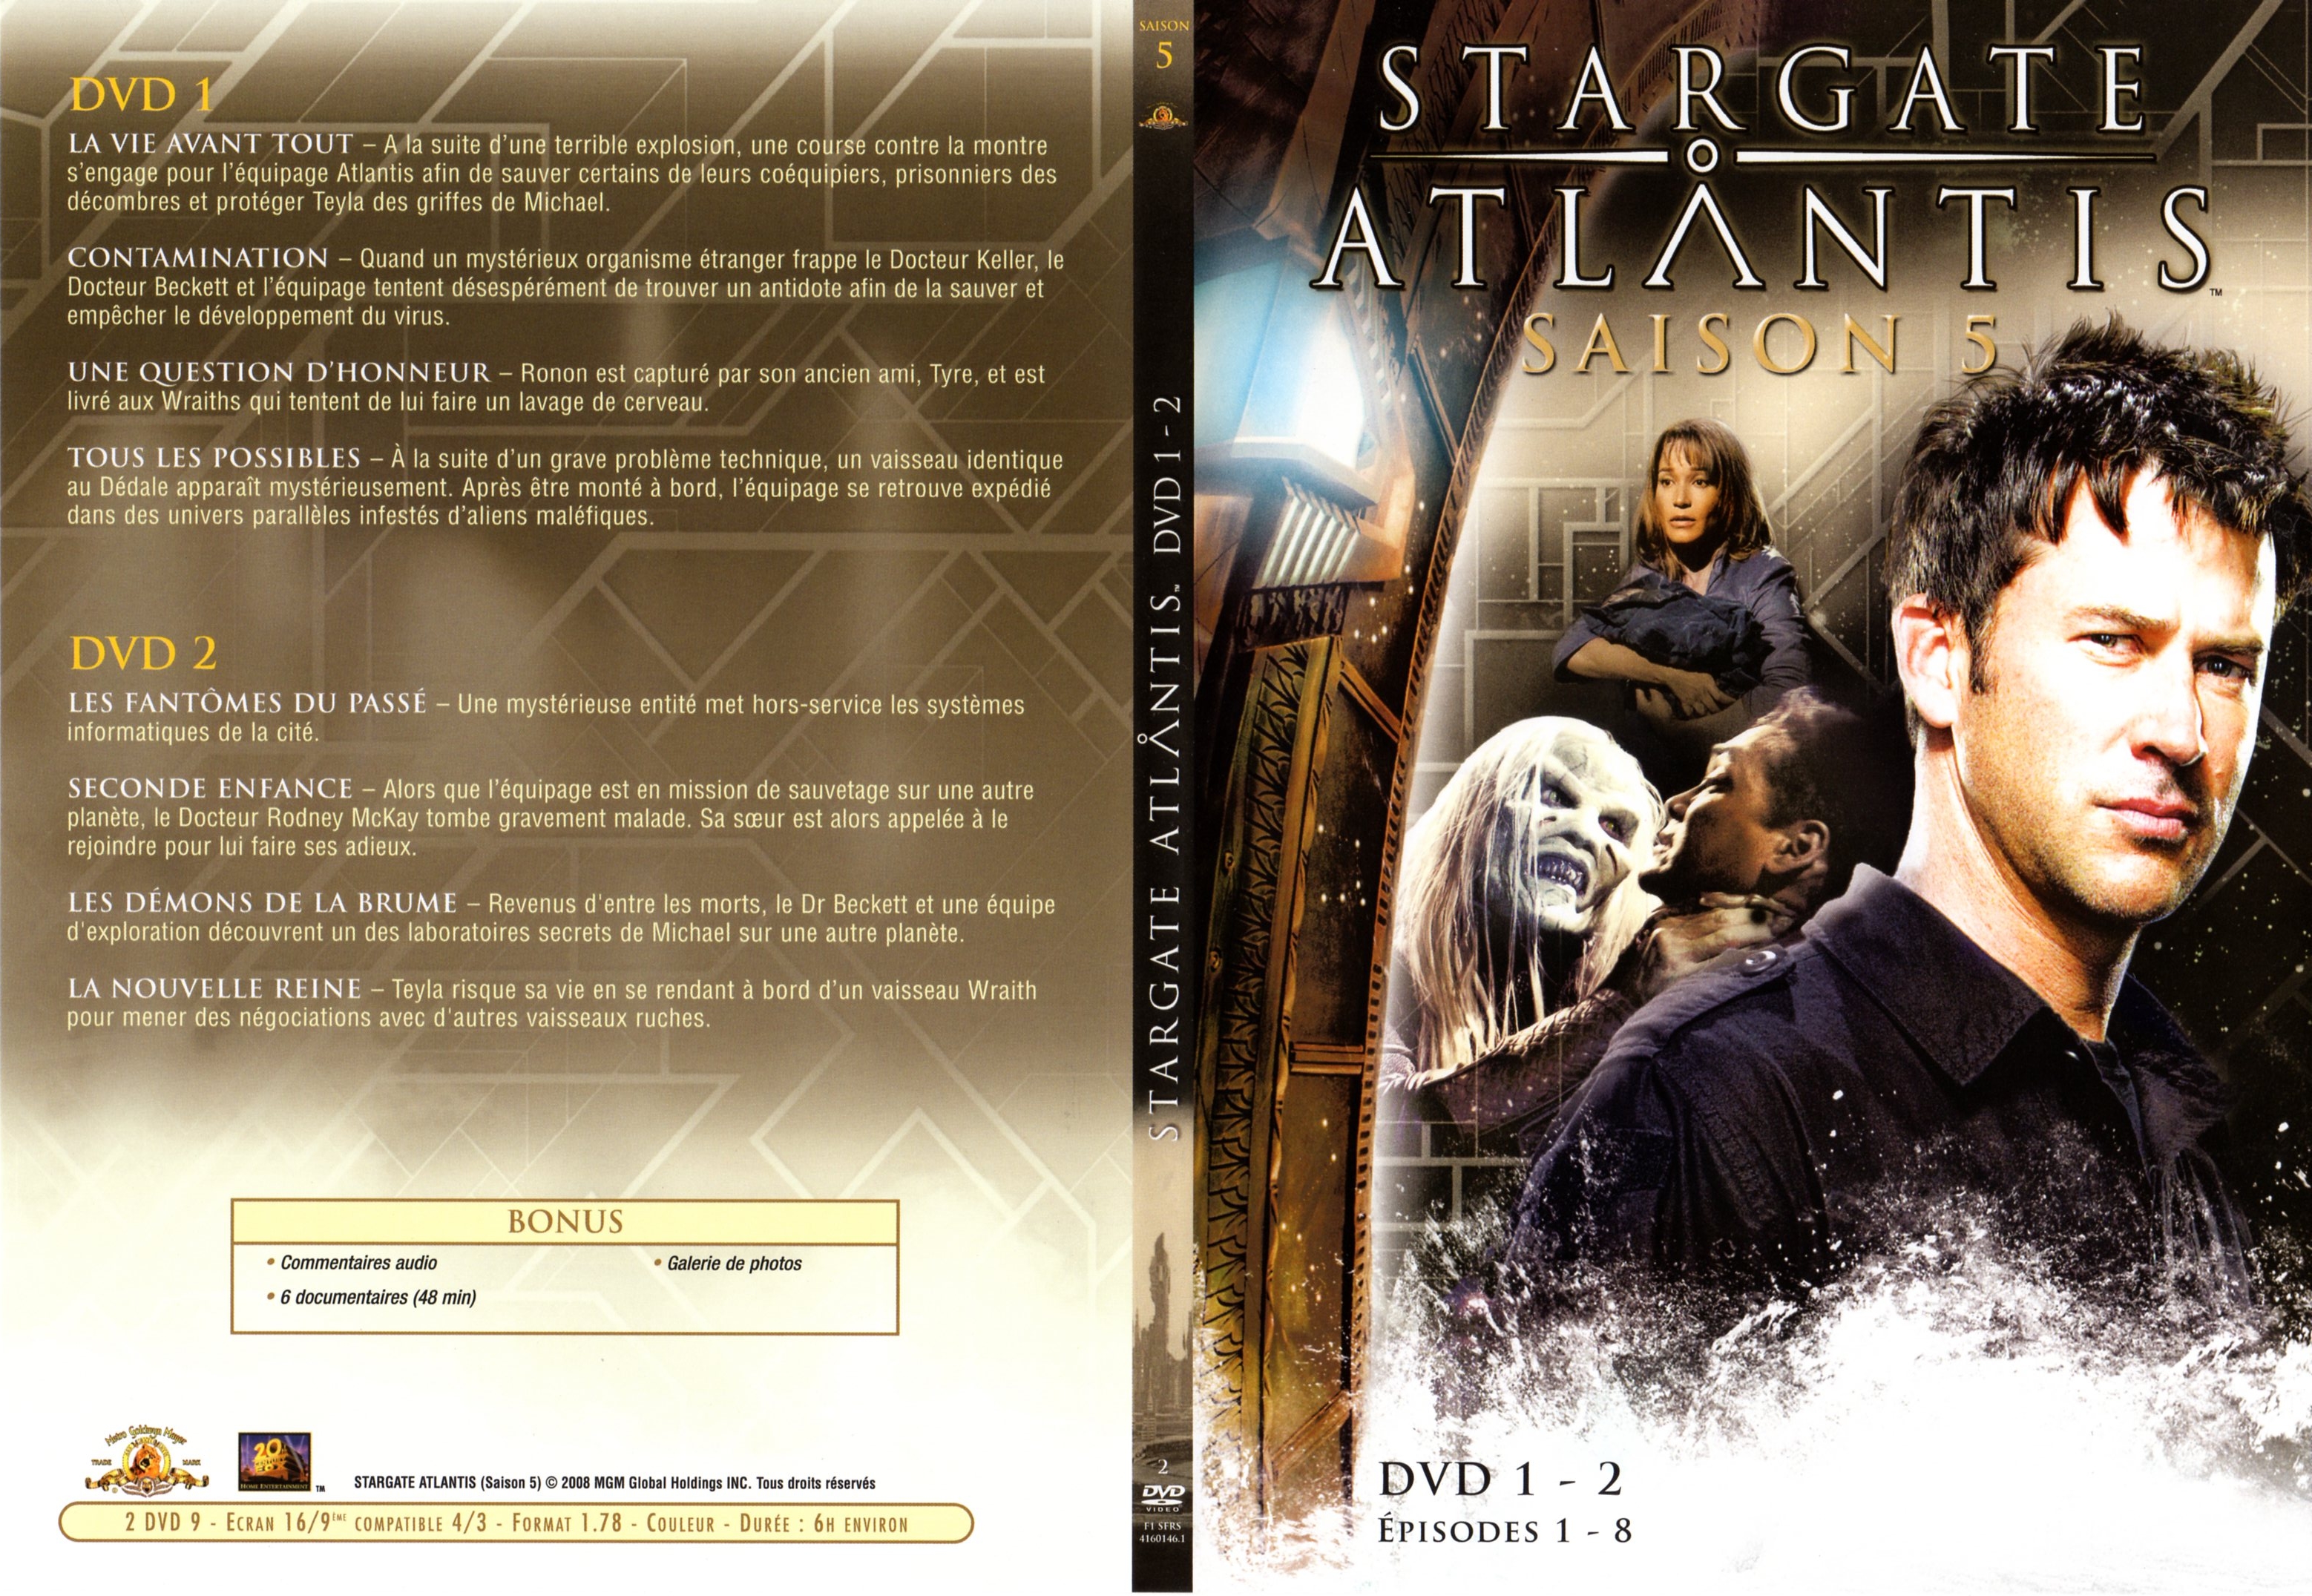 Jaquette DVD Stargate atlantis saison 5 DVD 1